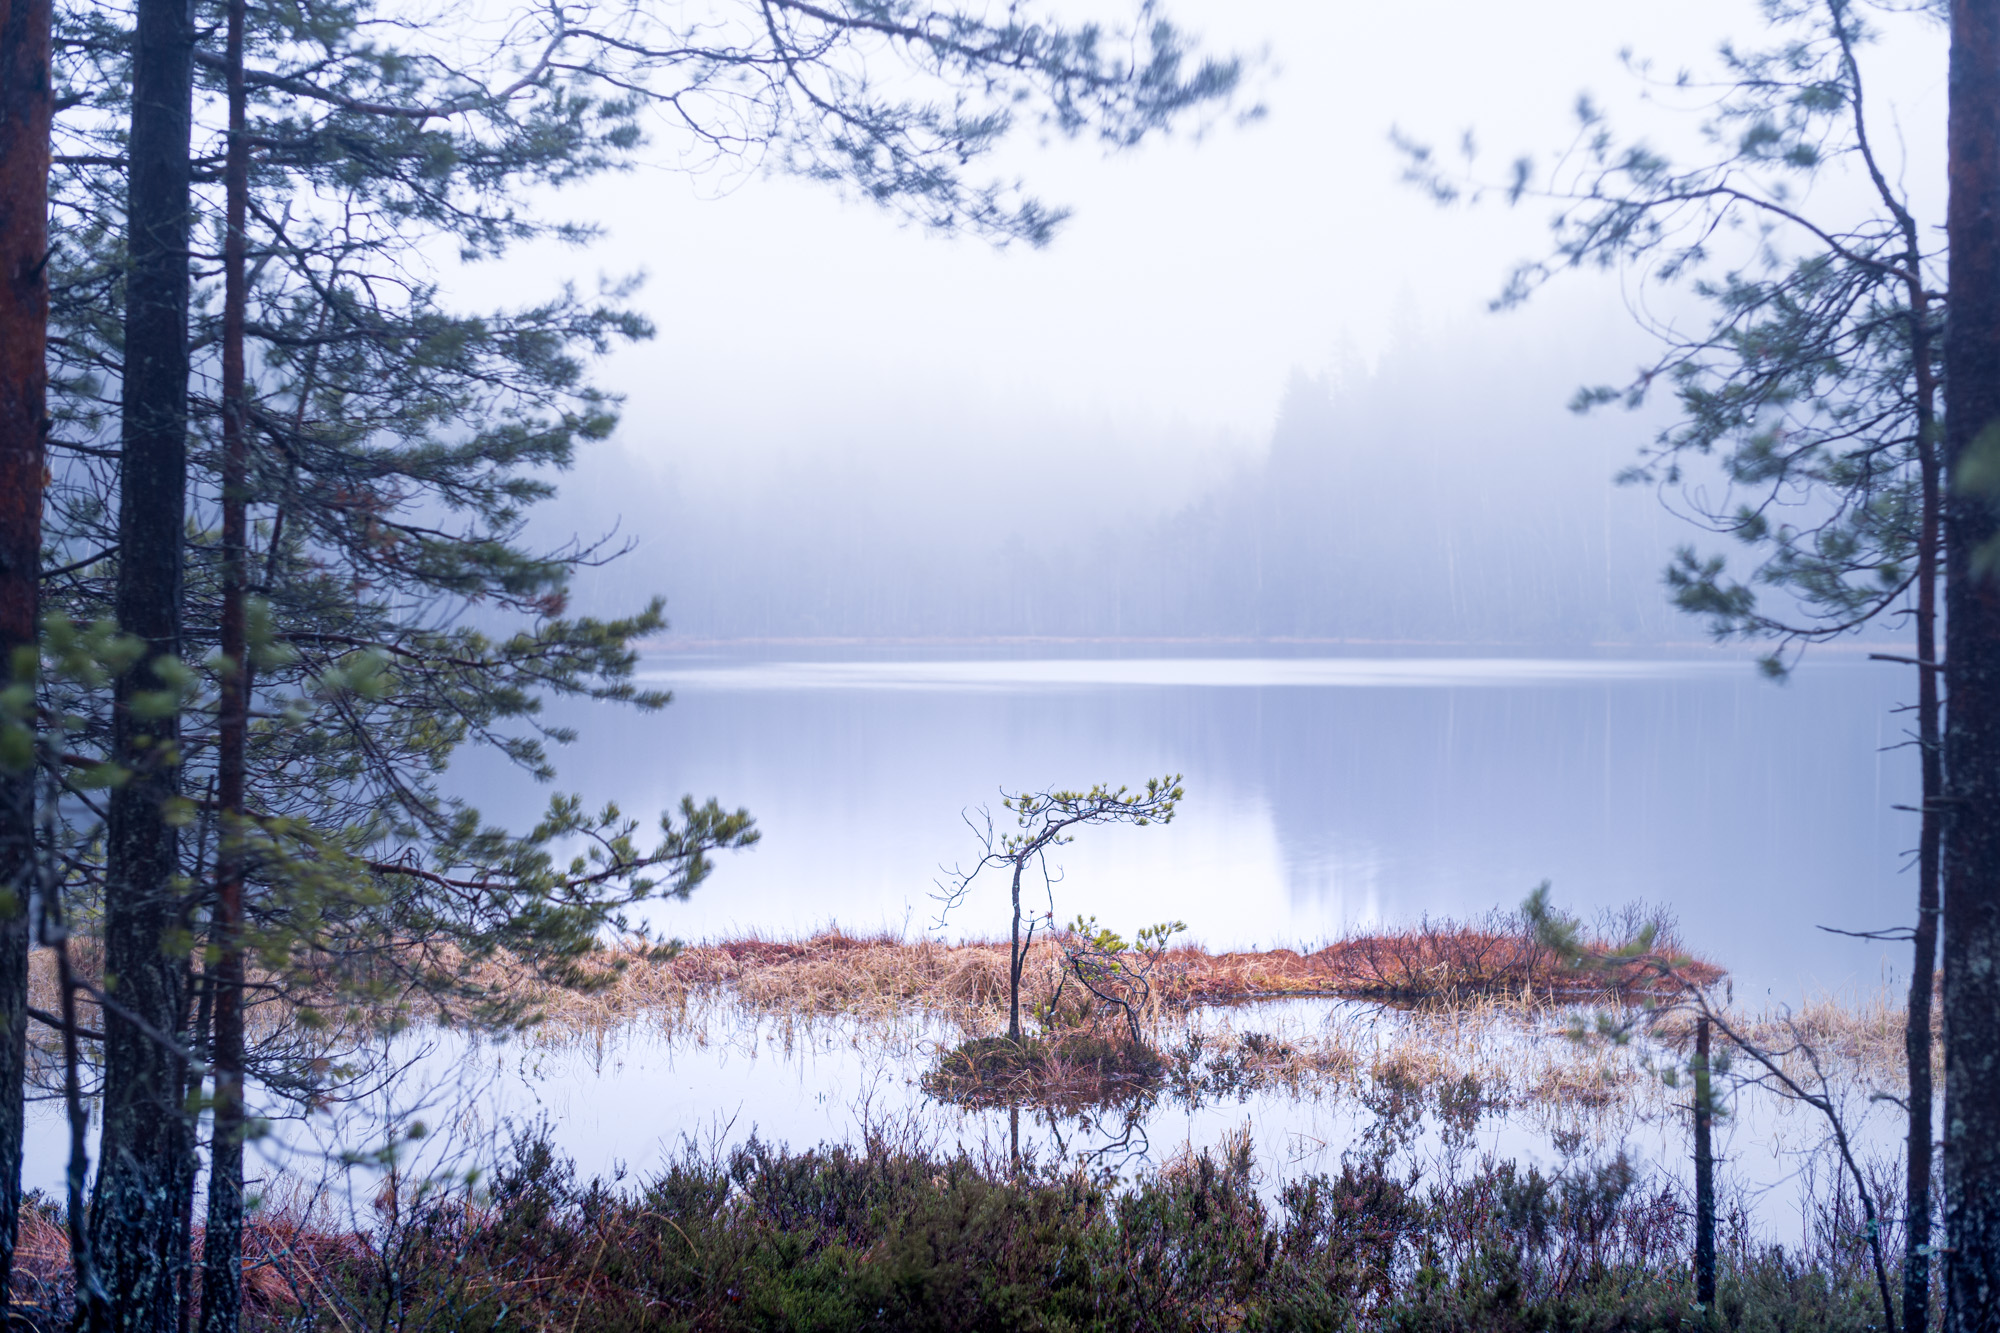 Misty landscape near a lake